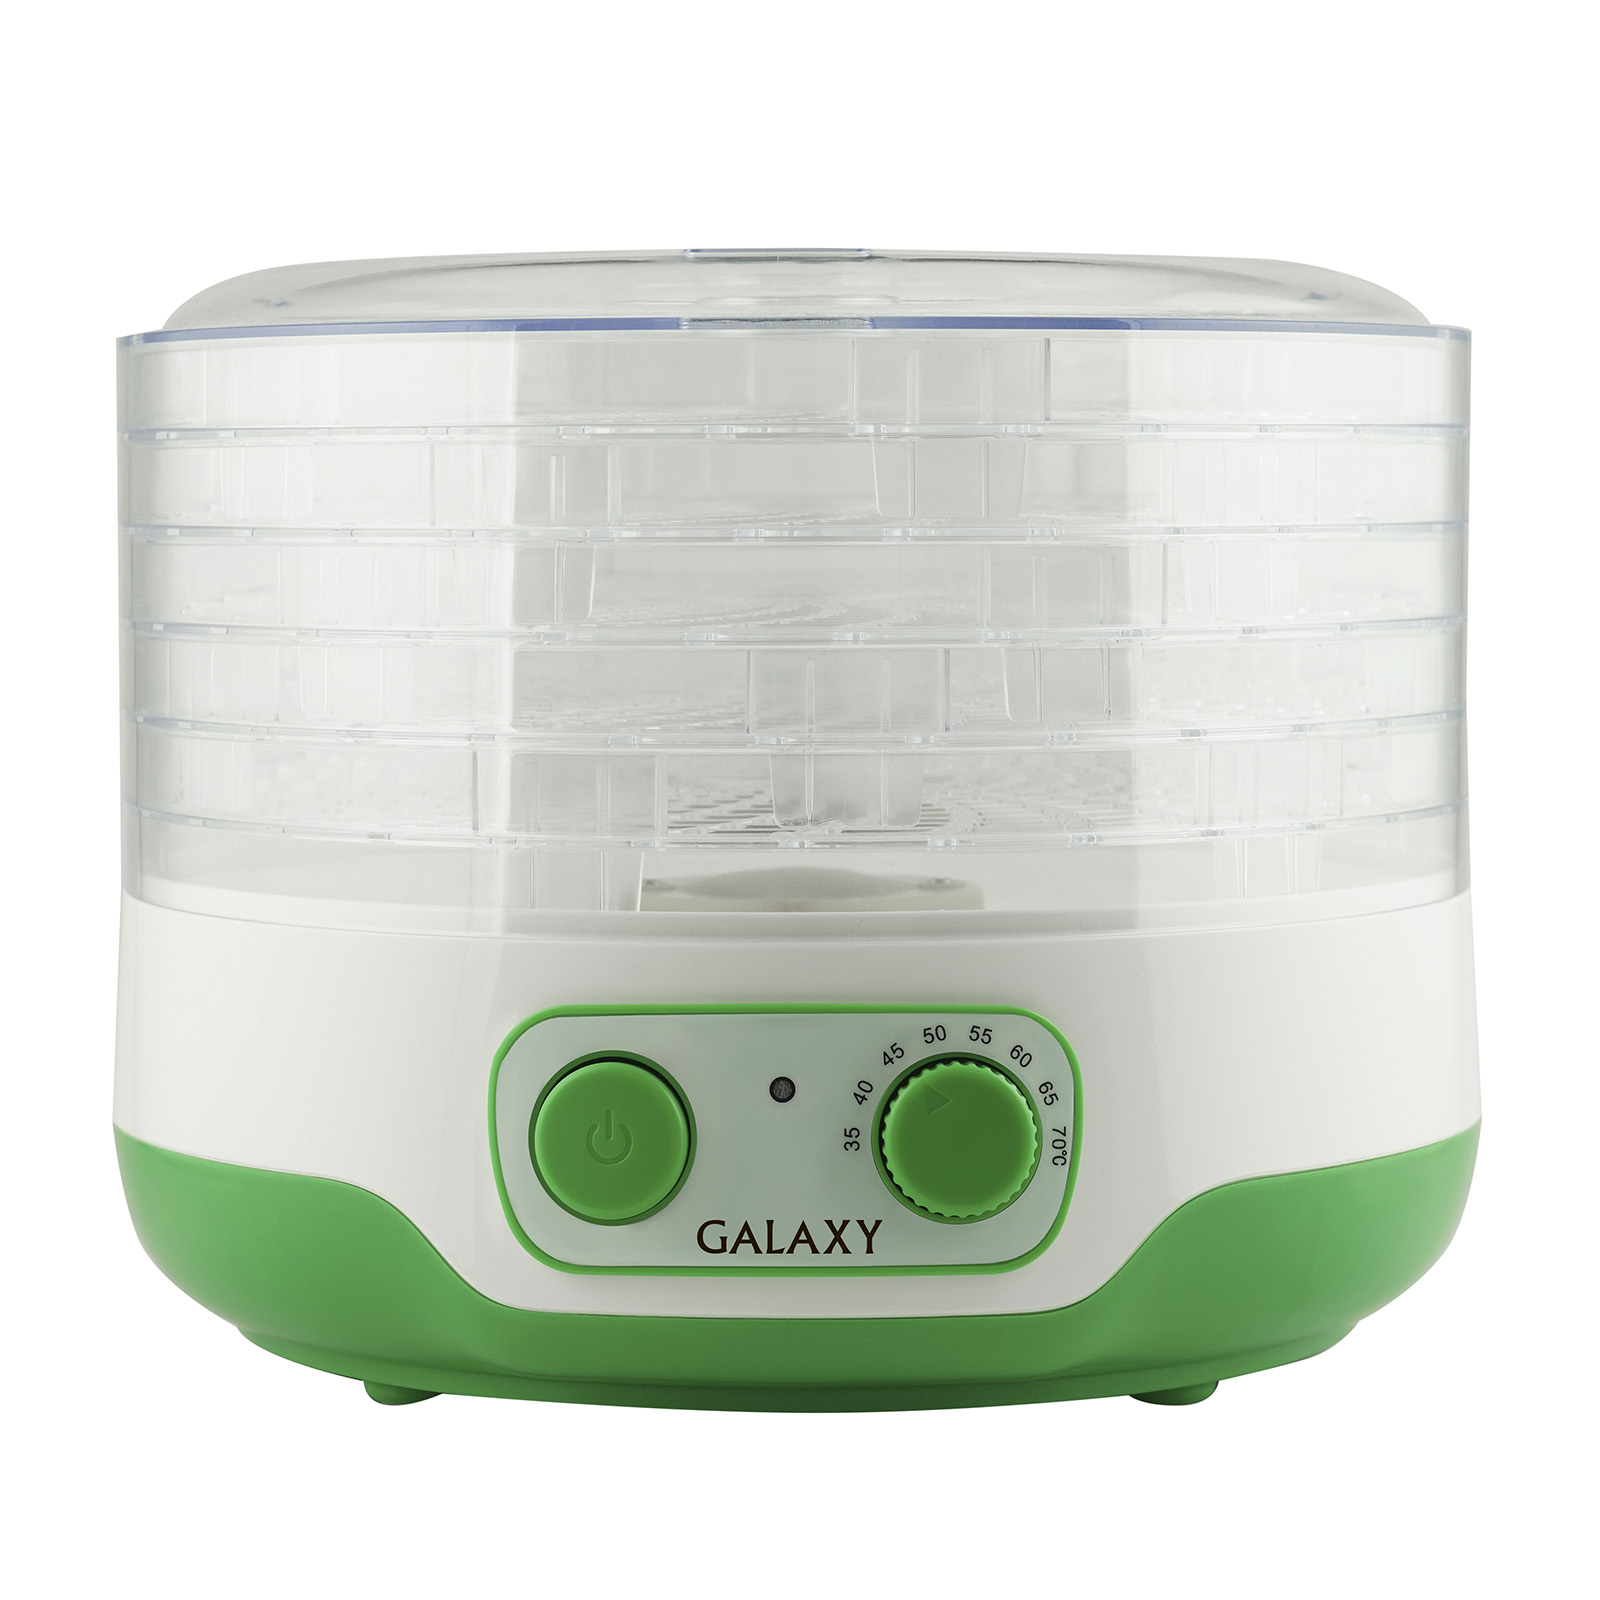 Сушилка для овощей и фруктов Galaxy GL 2634 (300 Вт, 9л, 5 съемн поддонов, регулировка высоты)